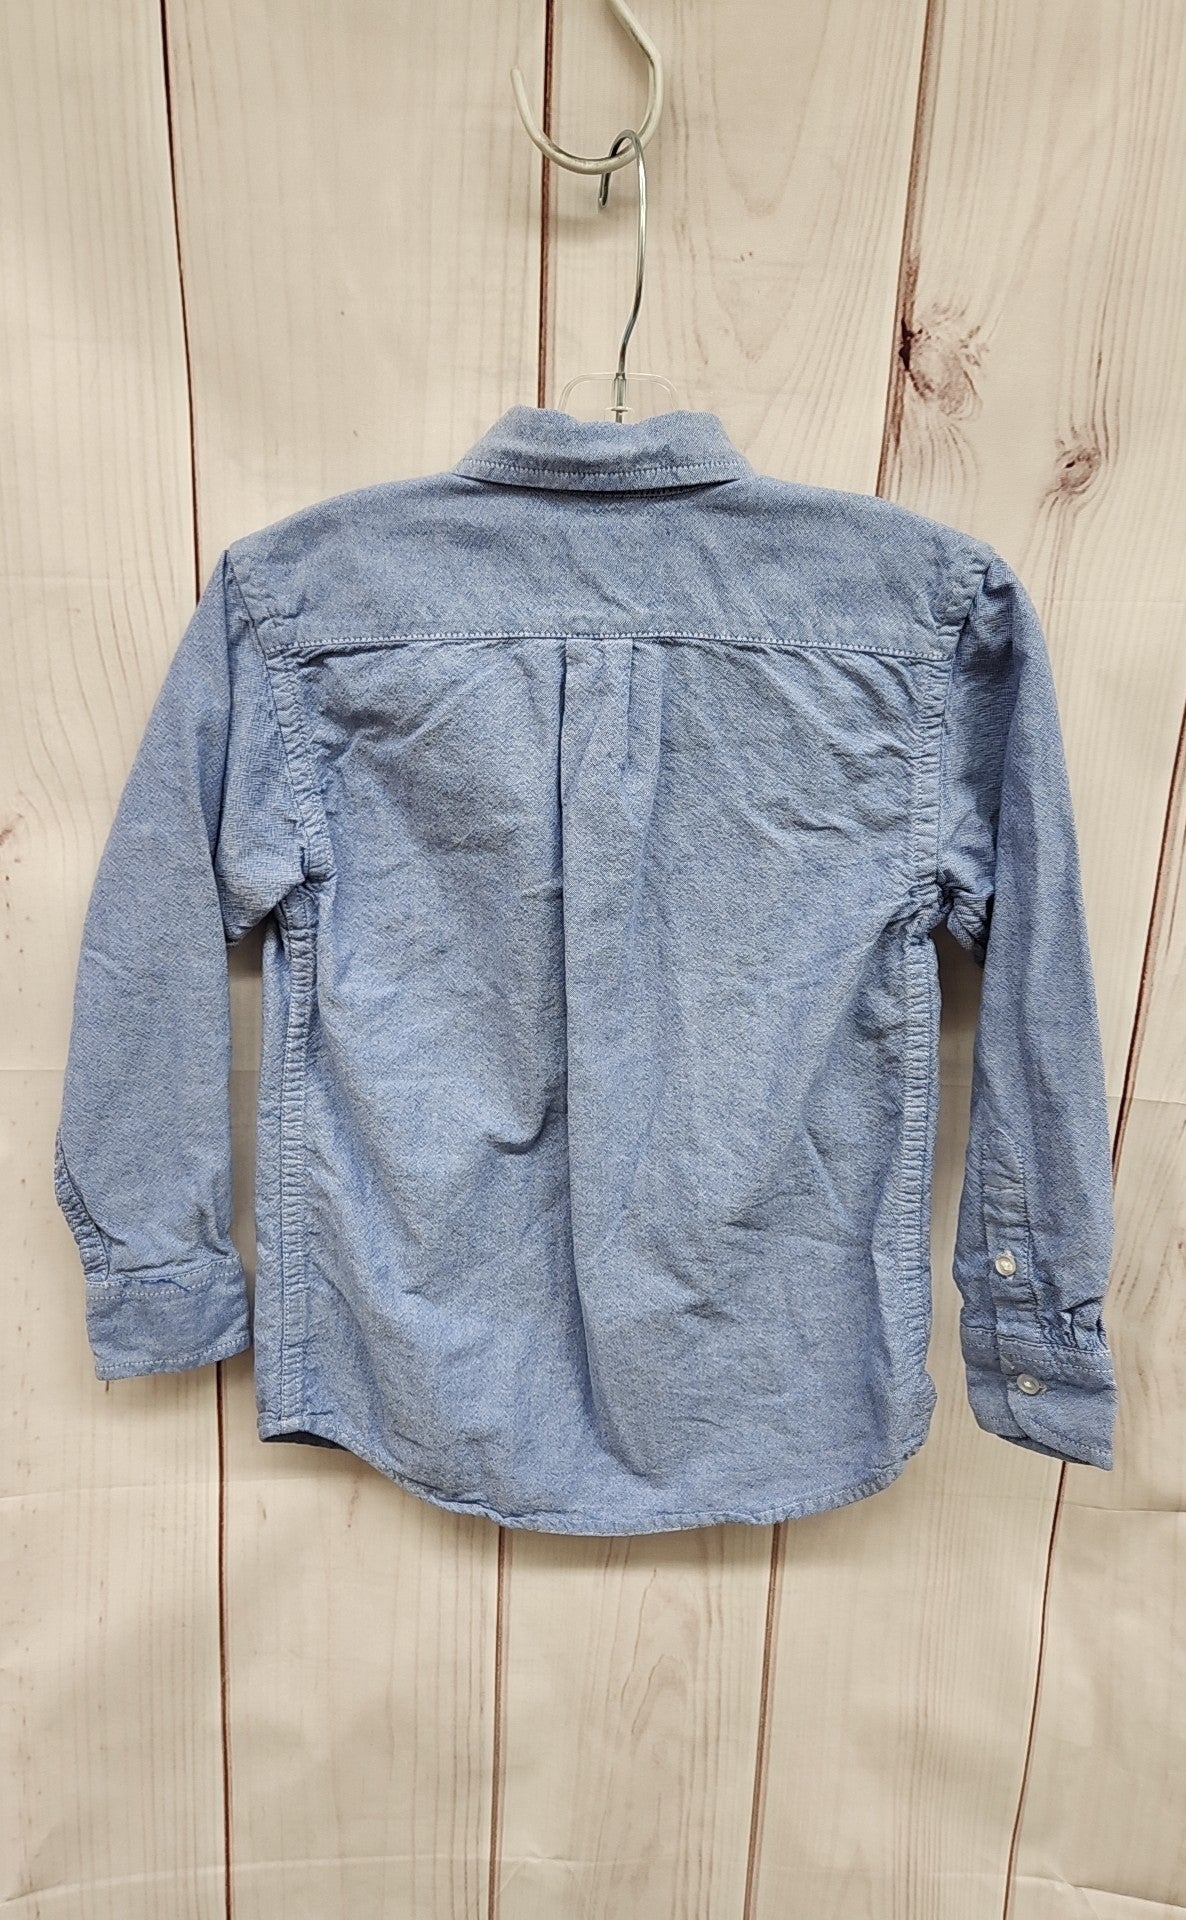 Place Boy's Size 5/6 Blue Shirt